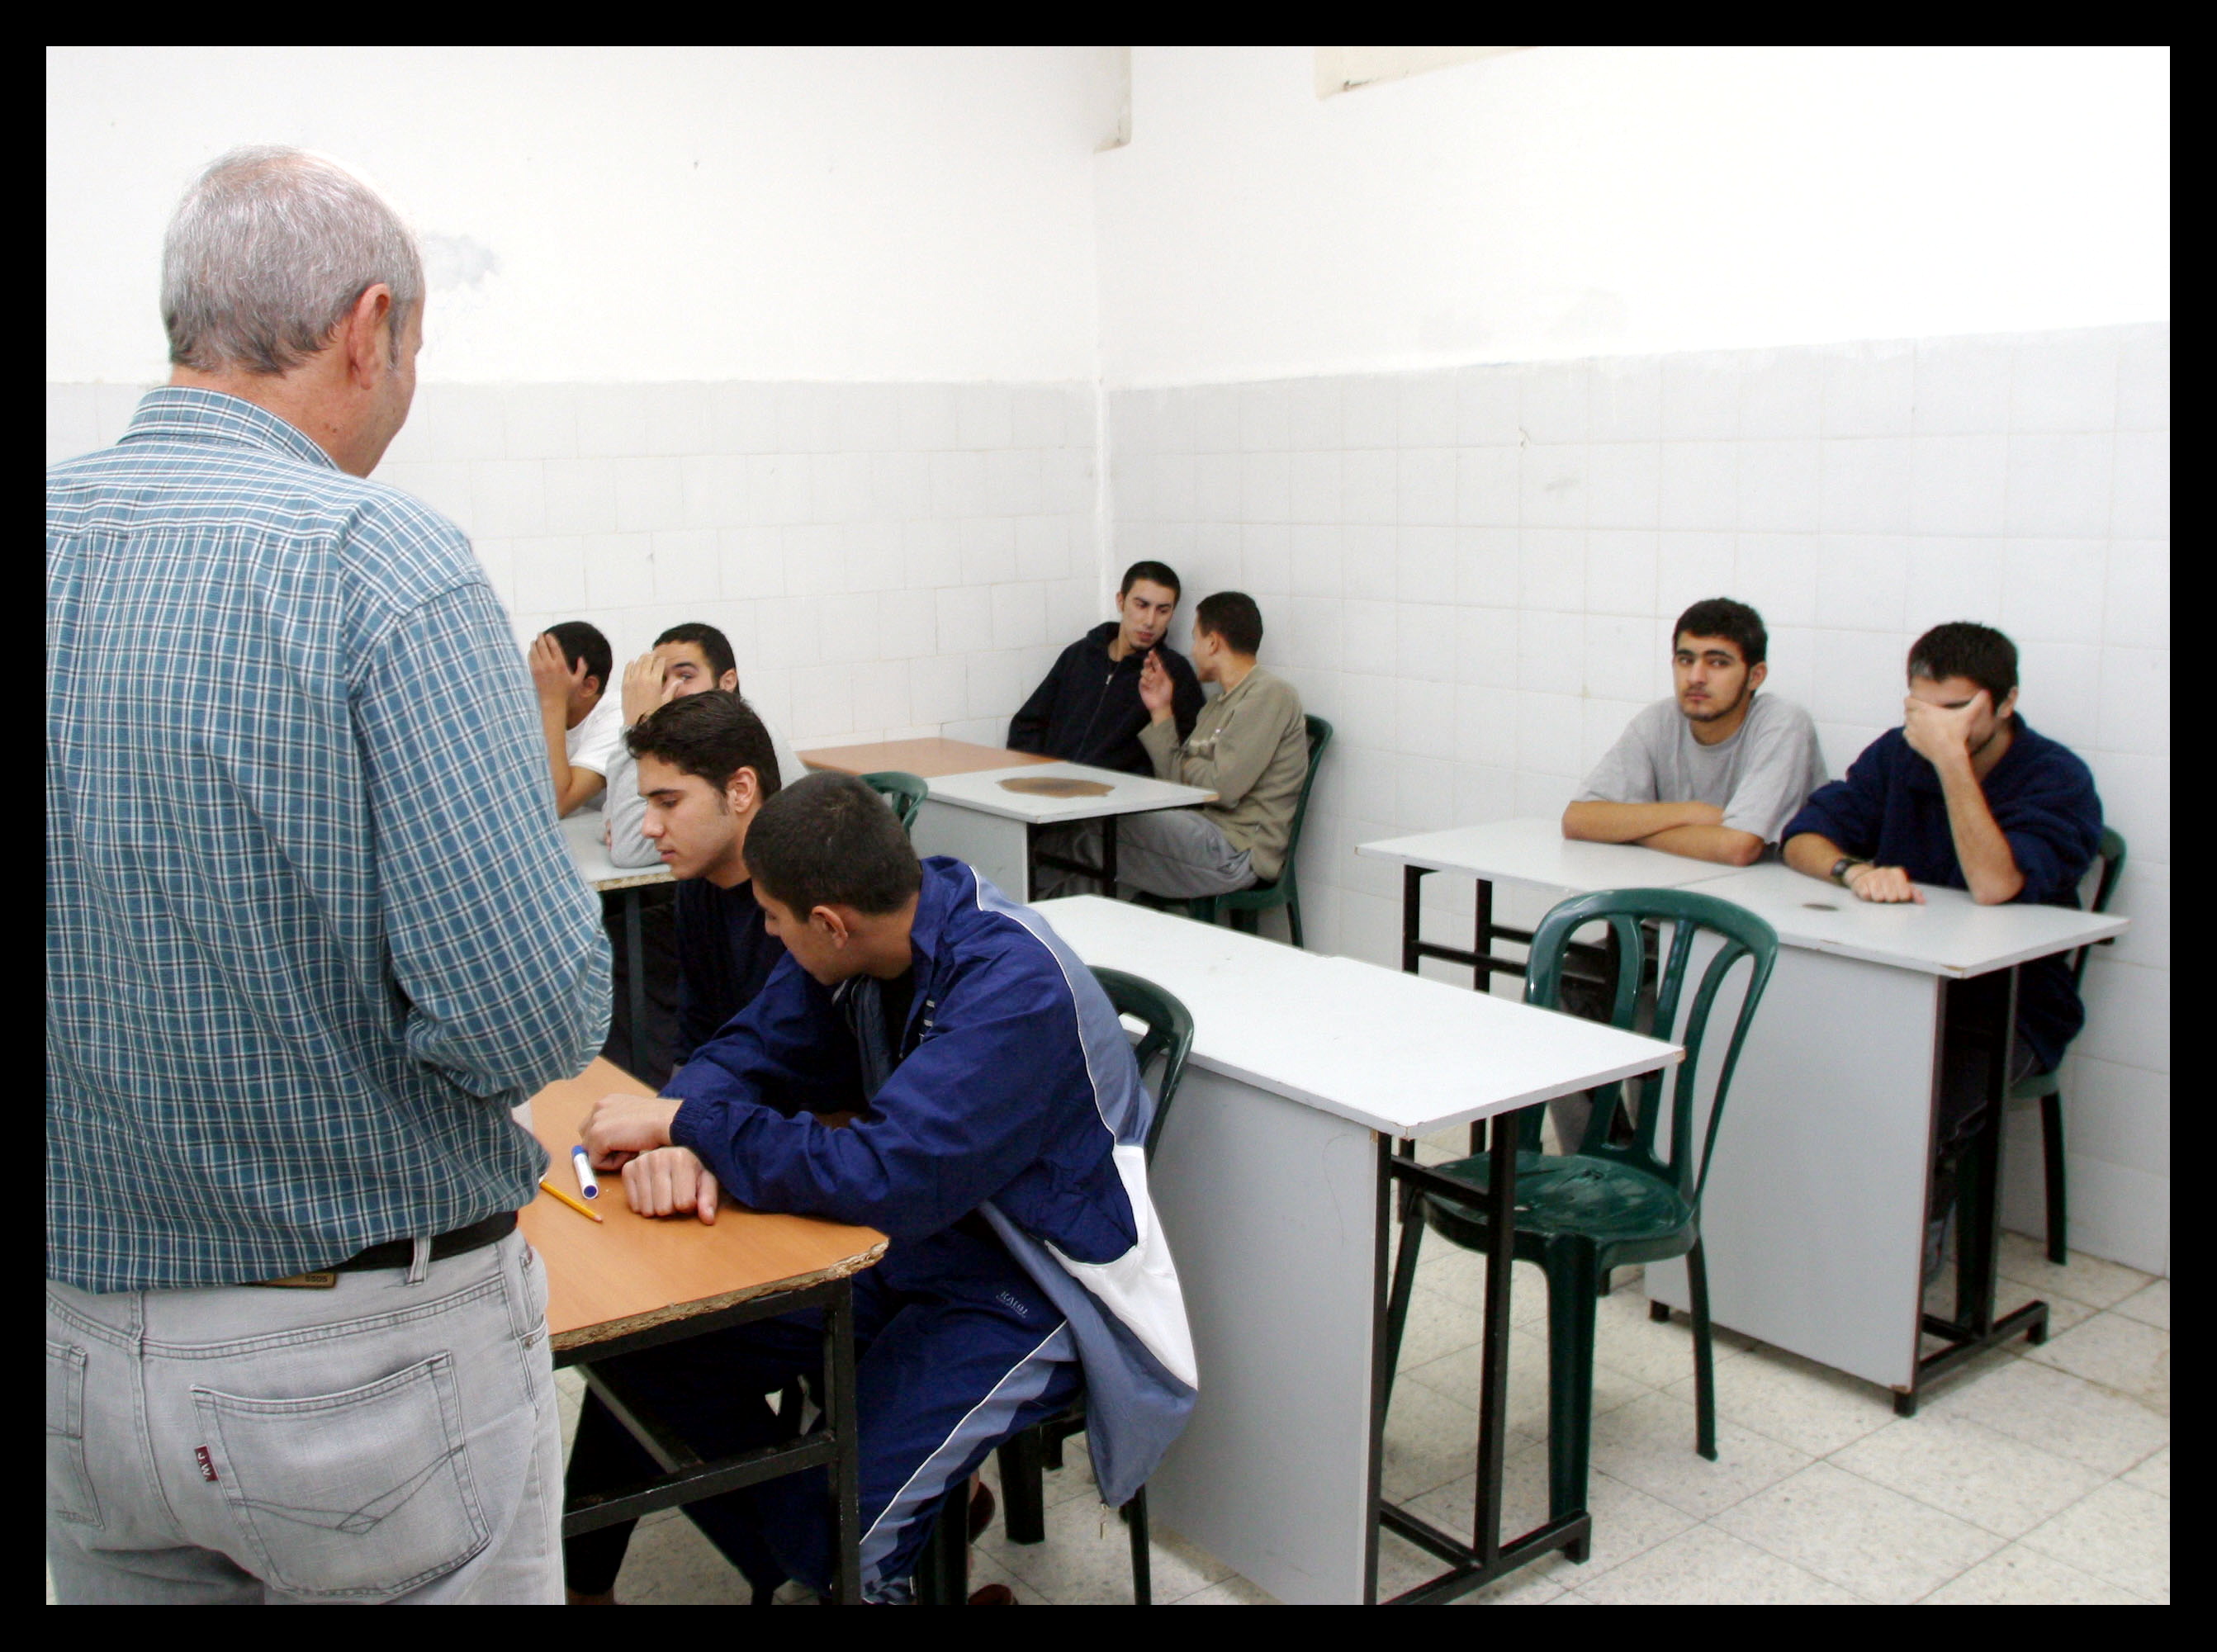 Палестинские заключенные получают образование в тюрьме. Фото: Меир Партуш, архив "Едиот ахронот"